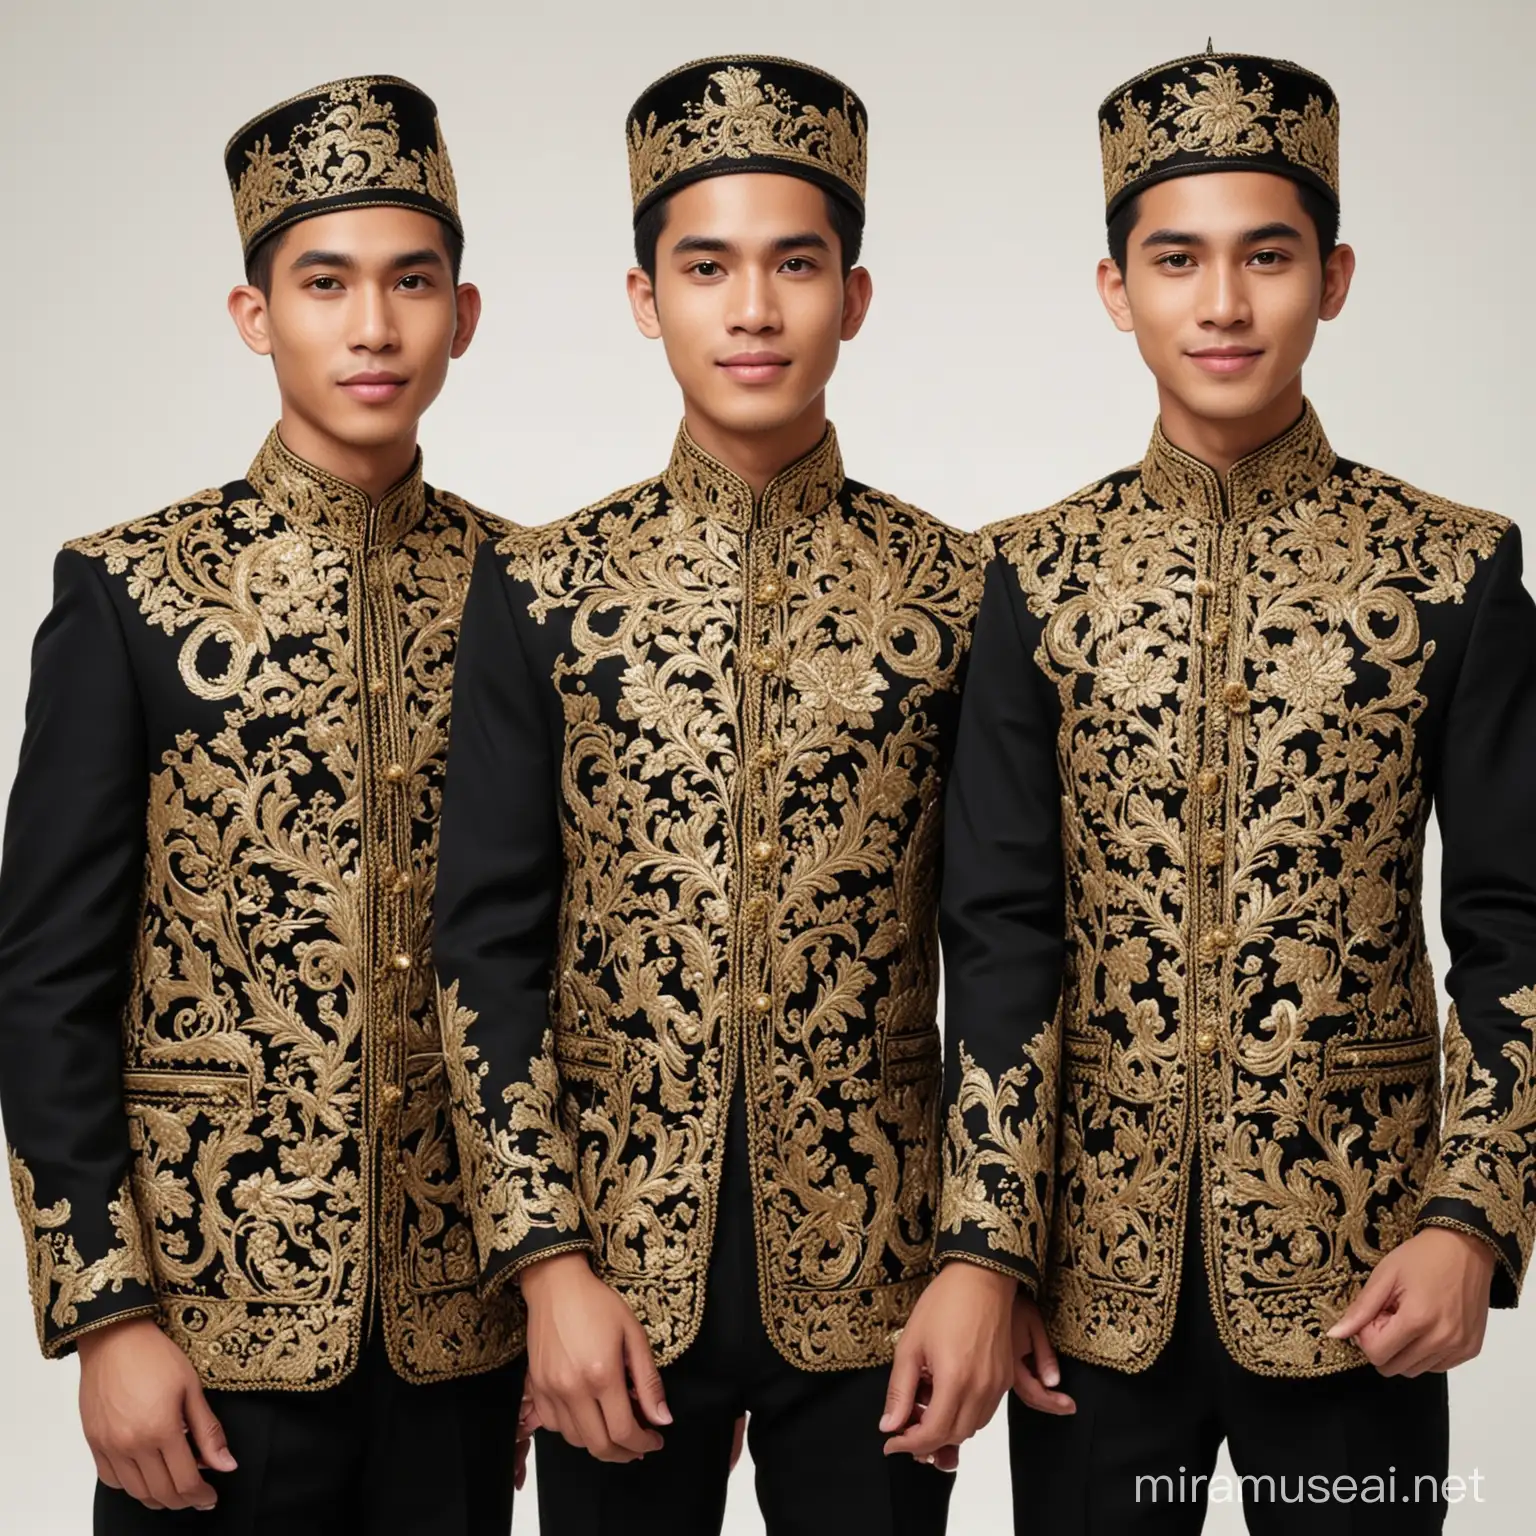 tiga pemuda ganteng ,wajah asli real indonesia, memakai baju jas hitam bordir emas, busana muslim ,baiground putih studio , realistis full body

DOWNLOAD